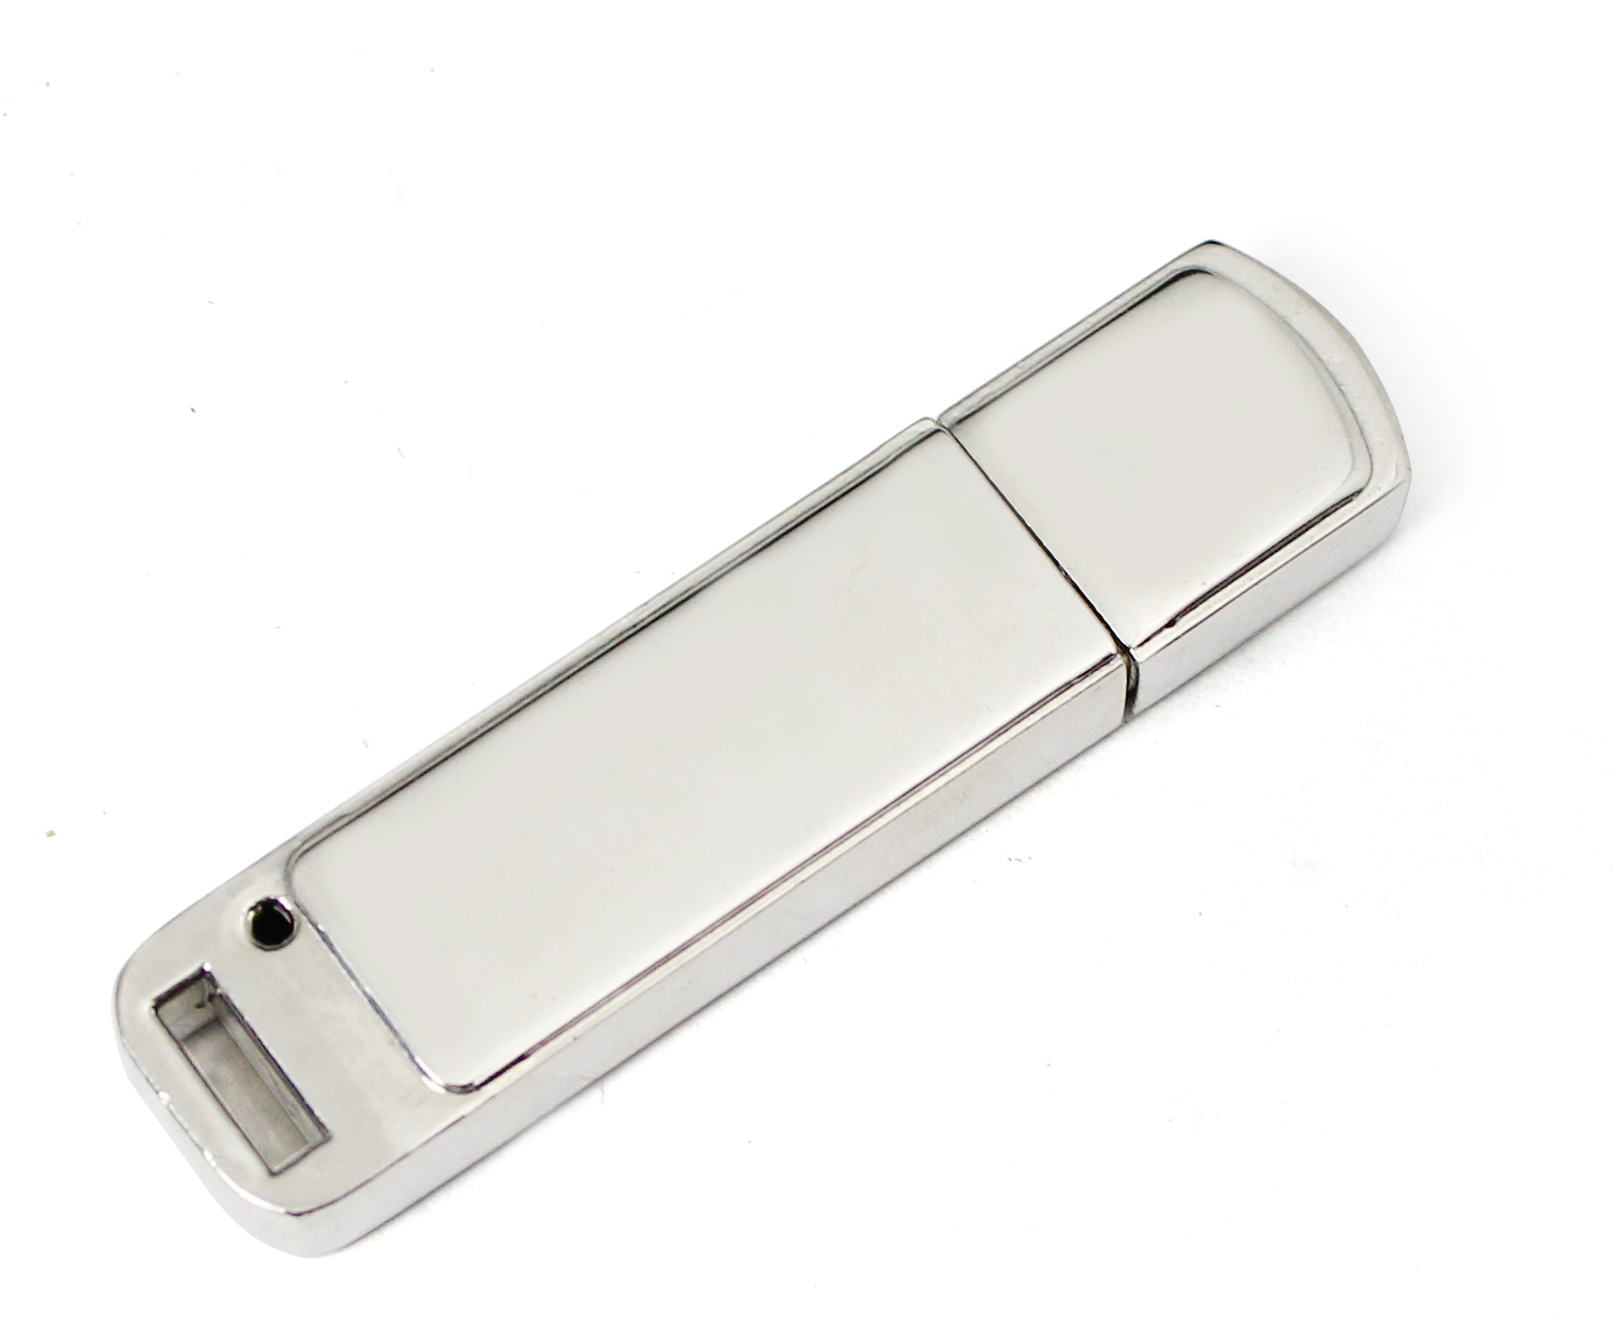 PZM644 Metal USB Flash Drives